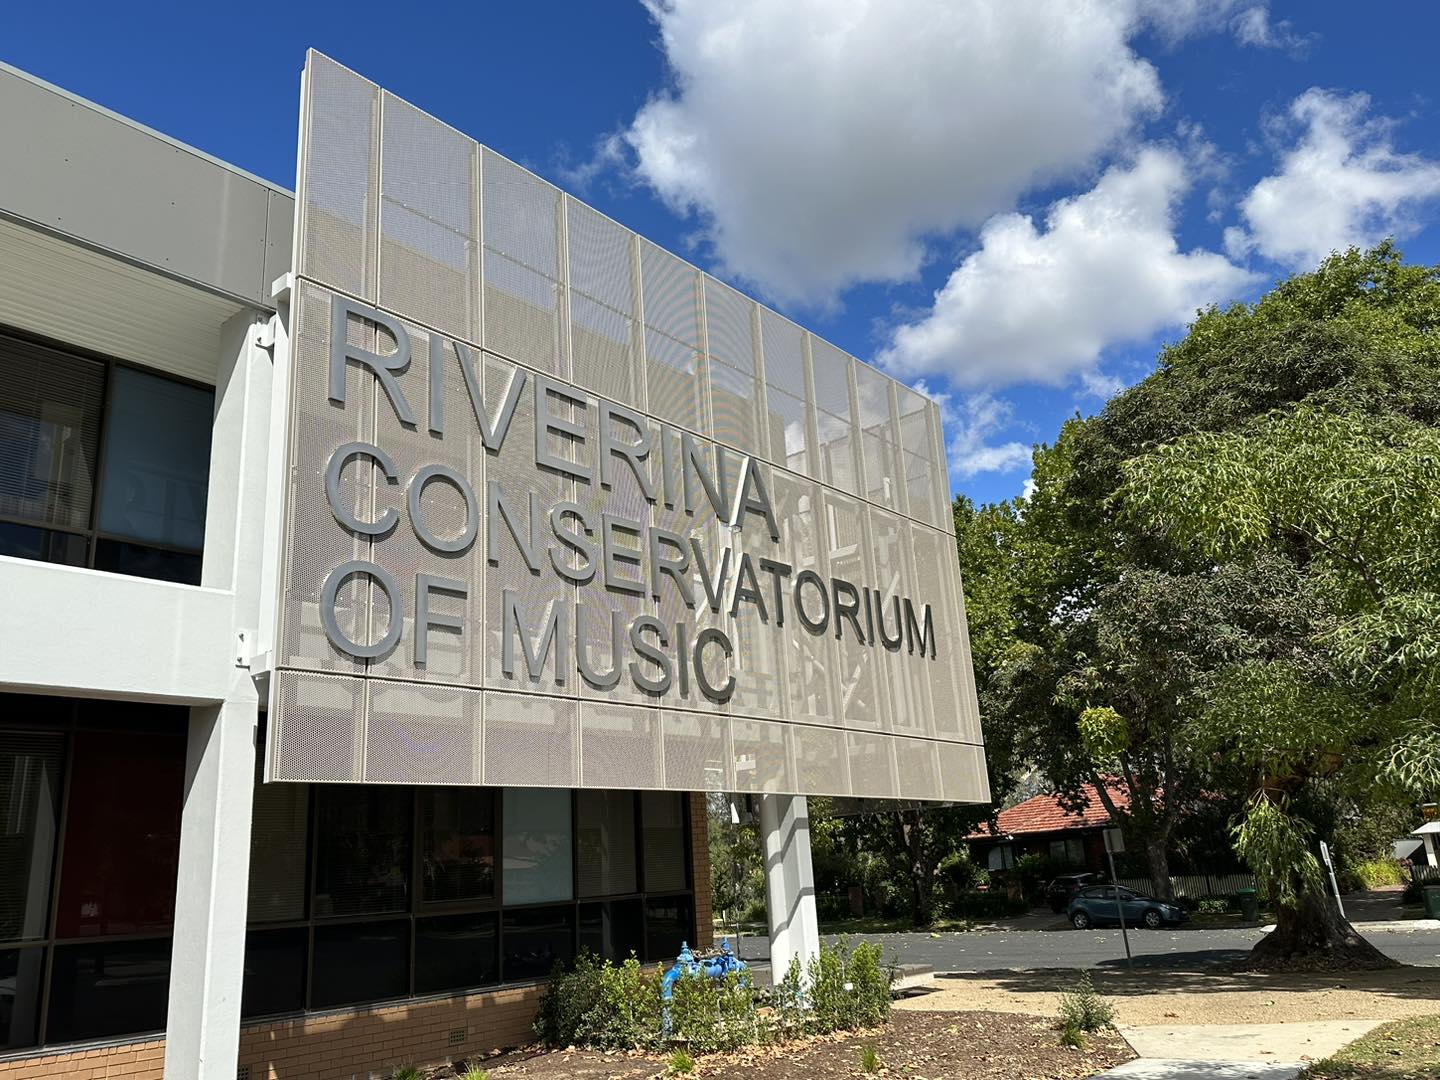 The Riverina Conservatorium of Music